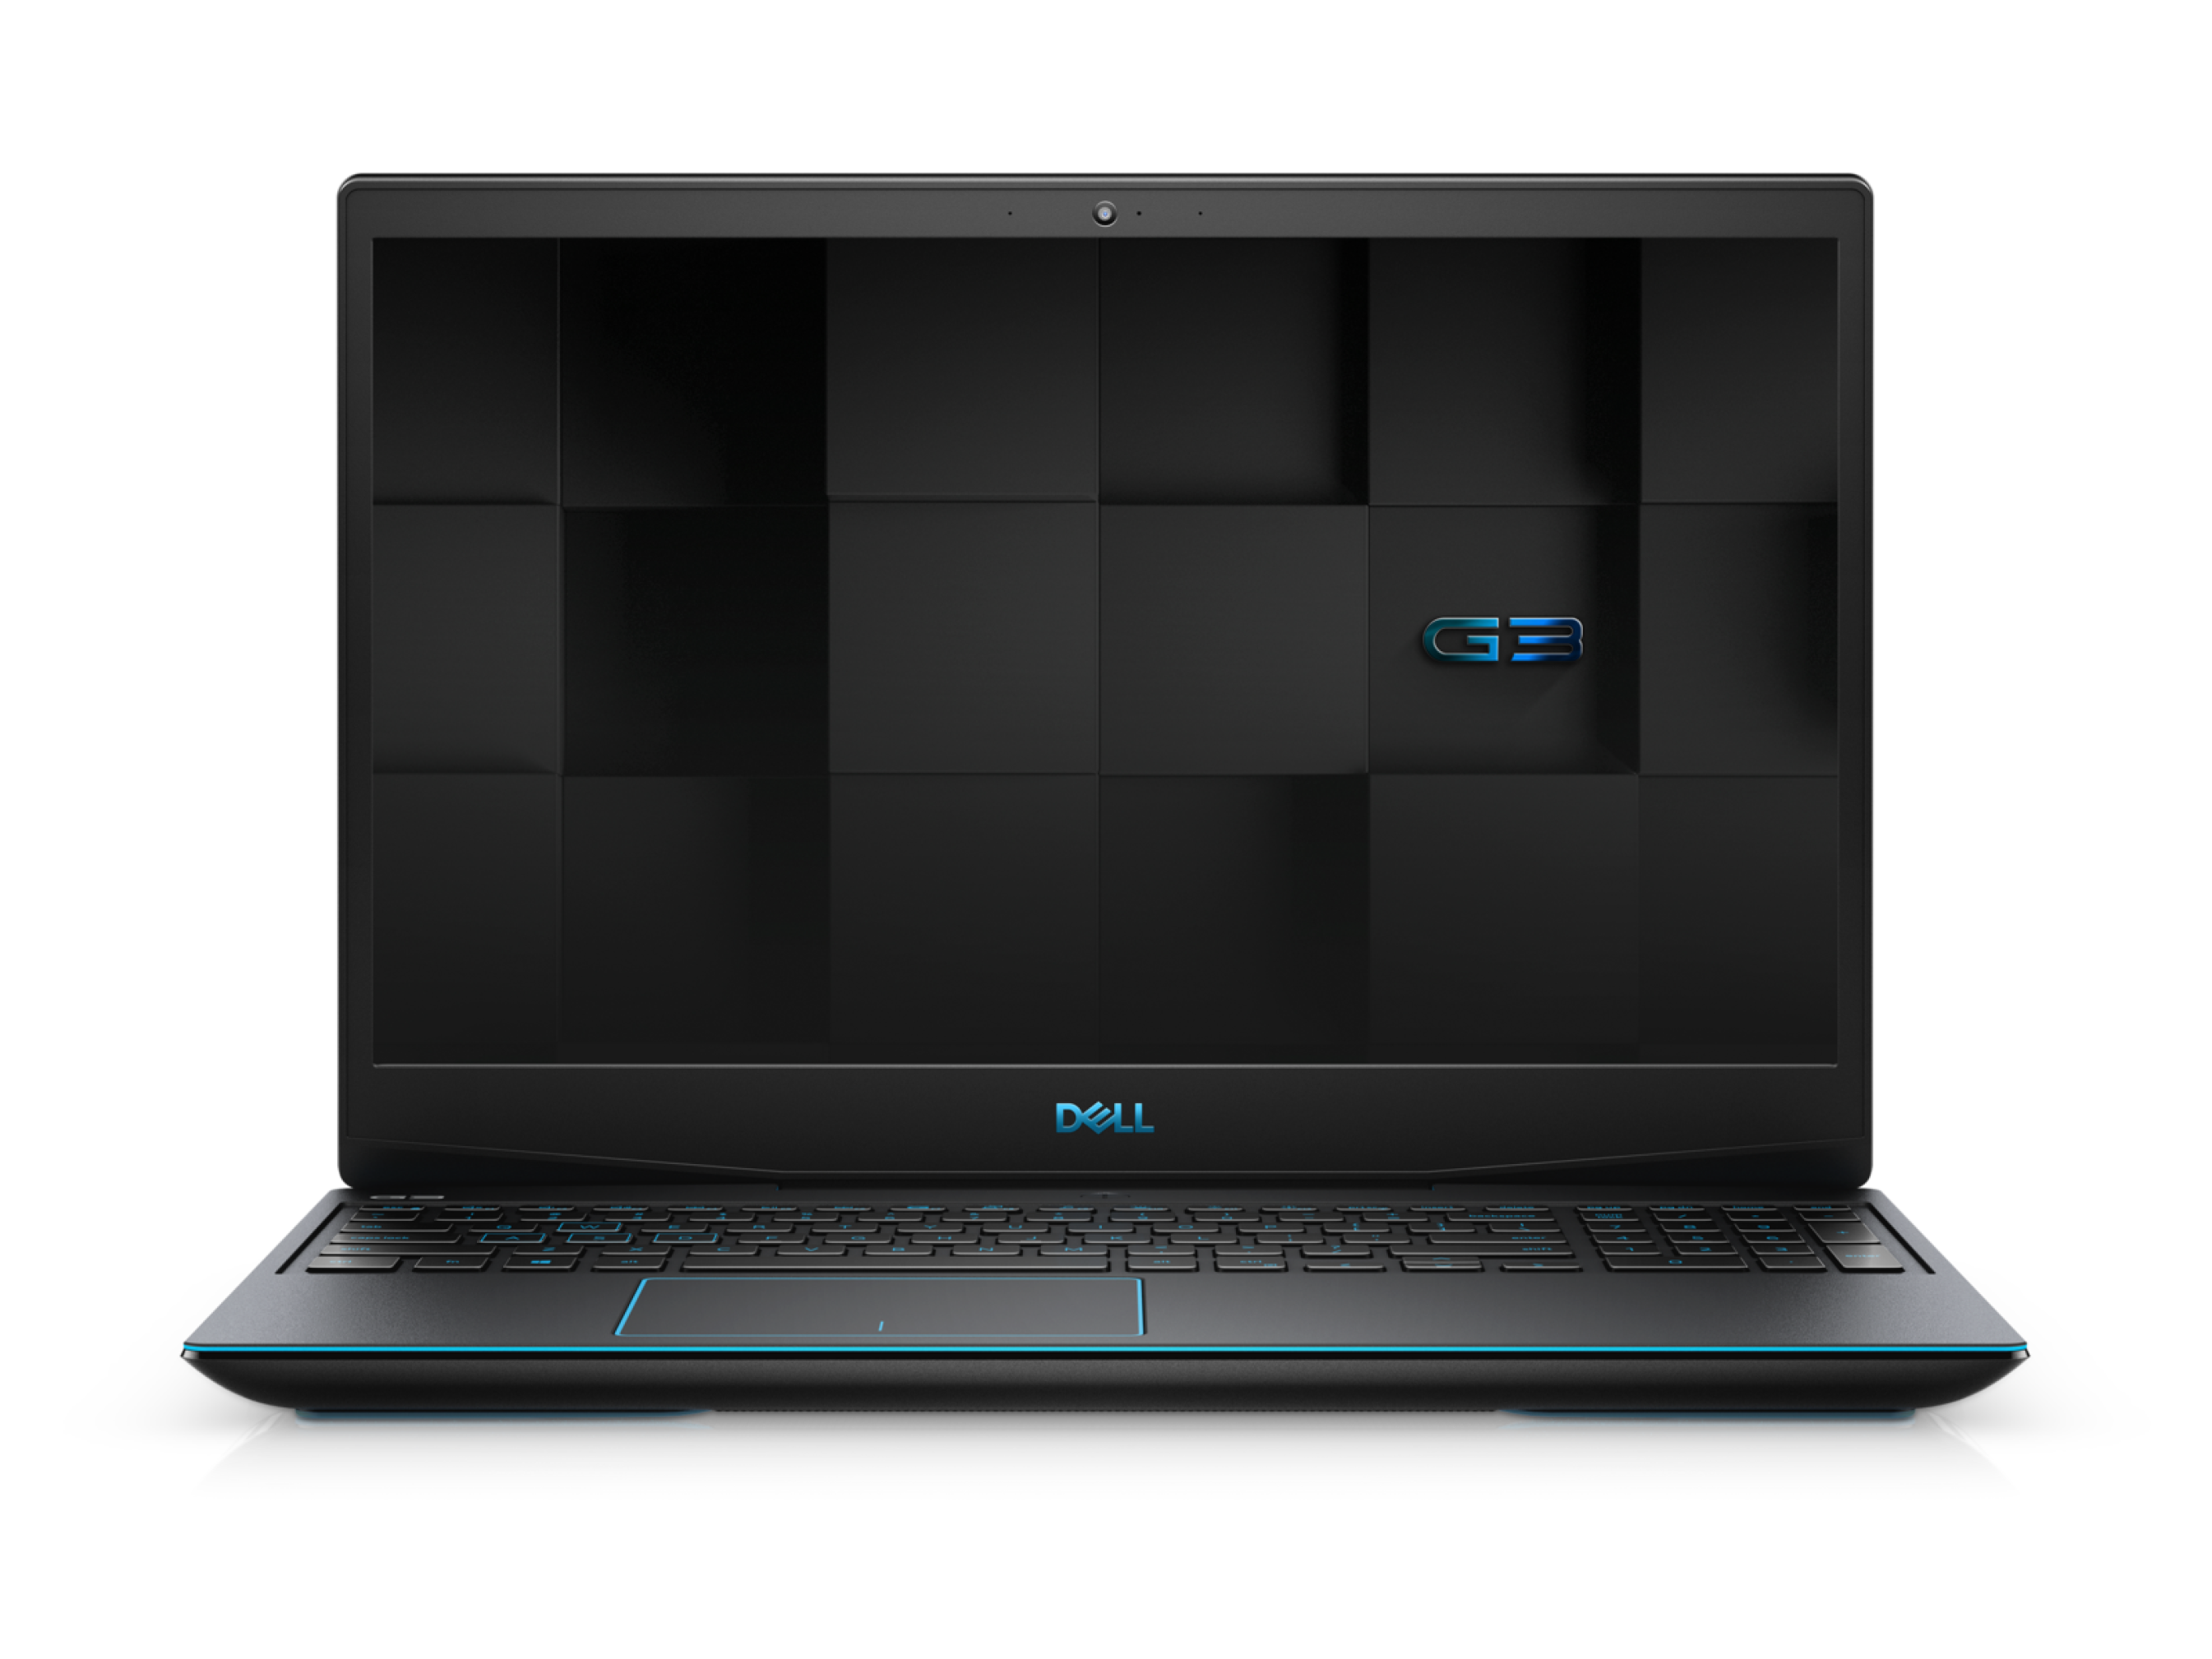  مشخصات،قیمت و خرید لپ تاپ گیمینگ Dell 15 G3 3590 با پردازنده Core i7 9750H | لاکچری لپ تاپ 